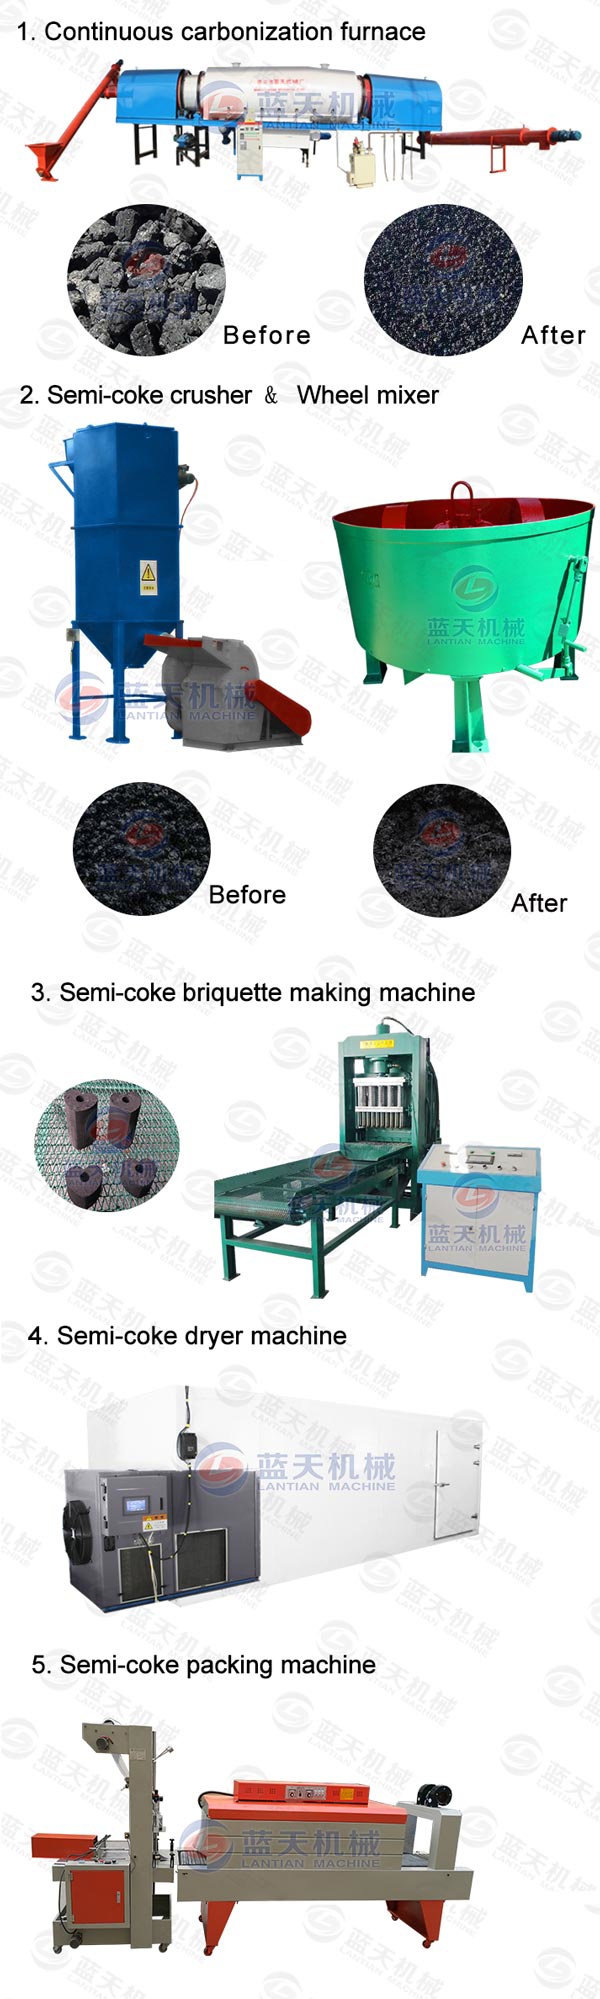 Semi-coke Briquette Making Machine